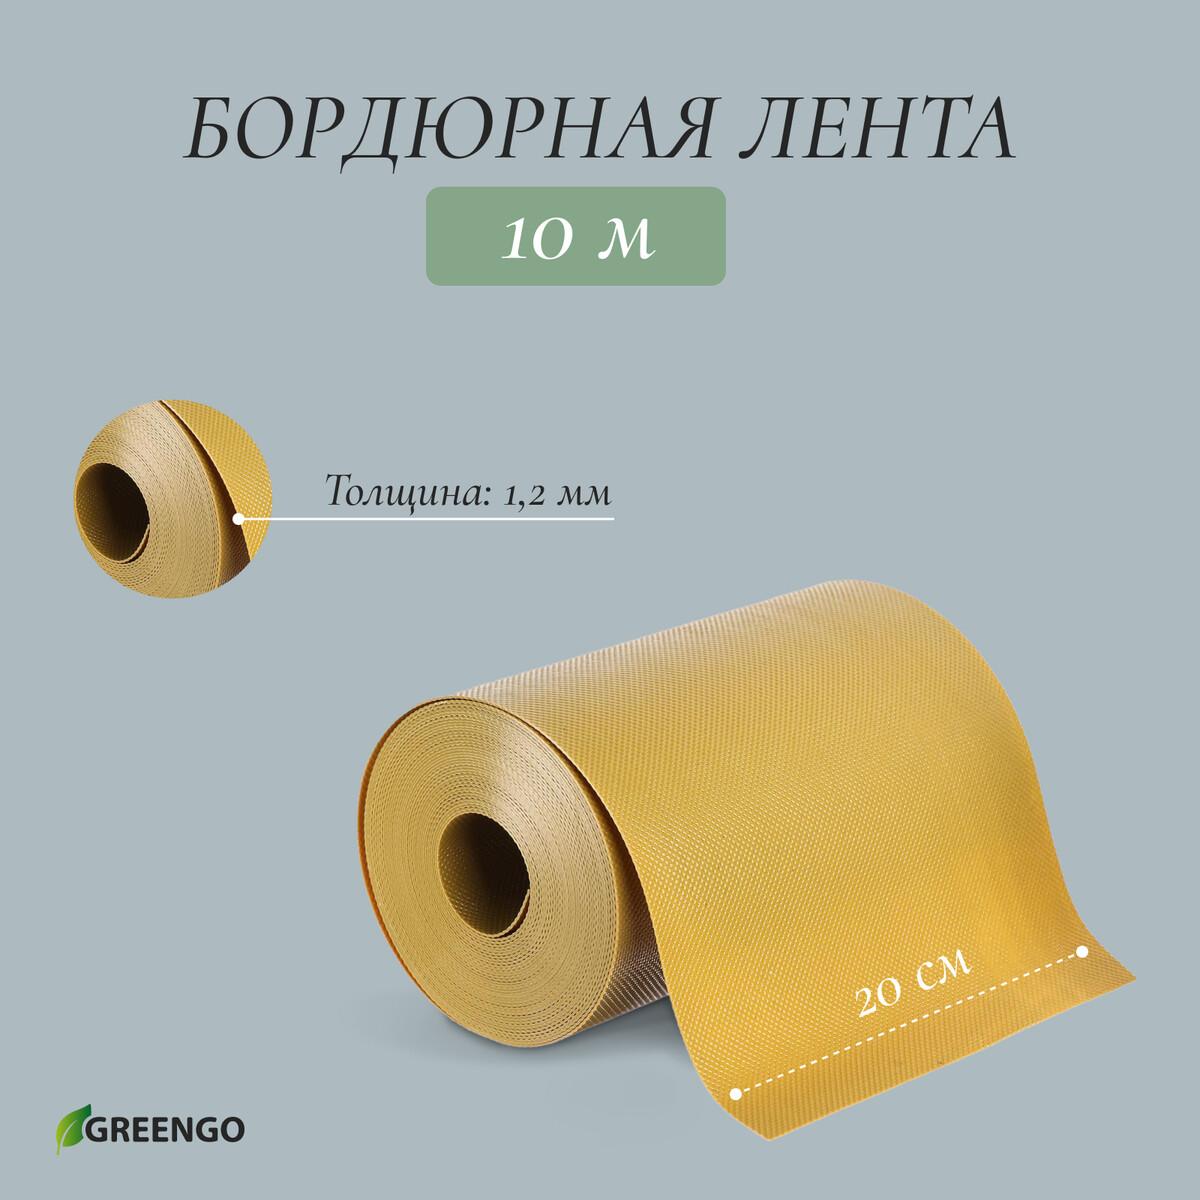 Лента бордюрная, 0.2 × 10 м, толщина 1.2 мм, пластиковая, желтая, greengo лента бордюрная 0 3 × 10 м толщина 1 2 мм пластиковая зеленая greengo